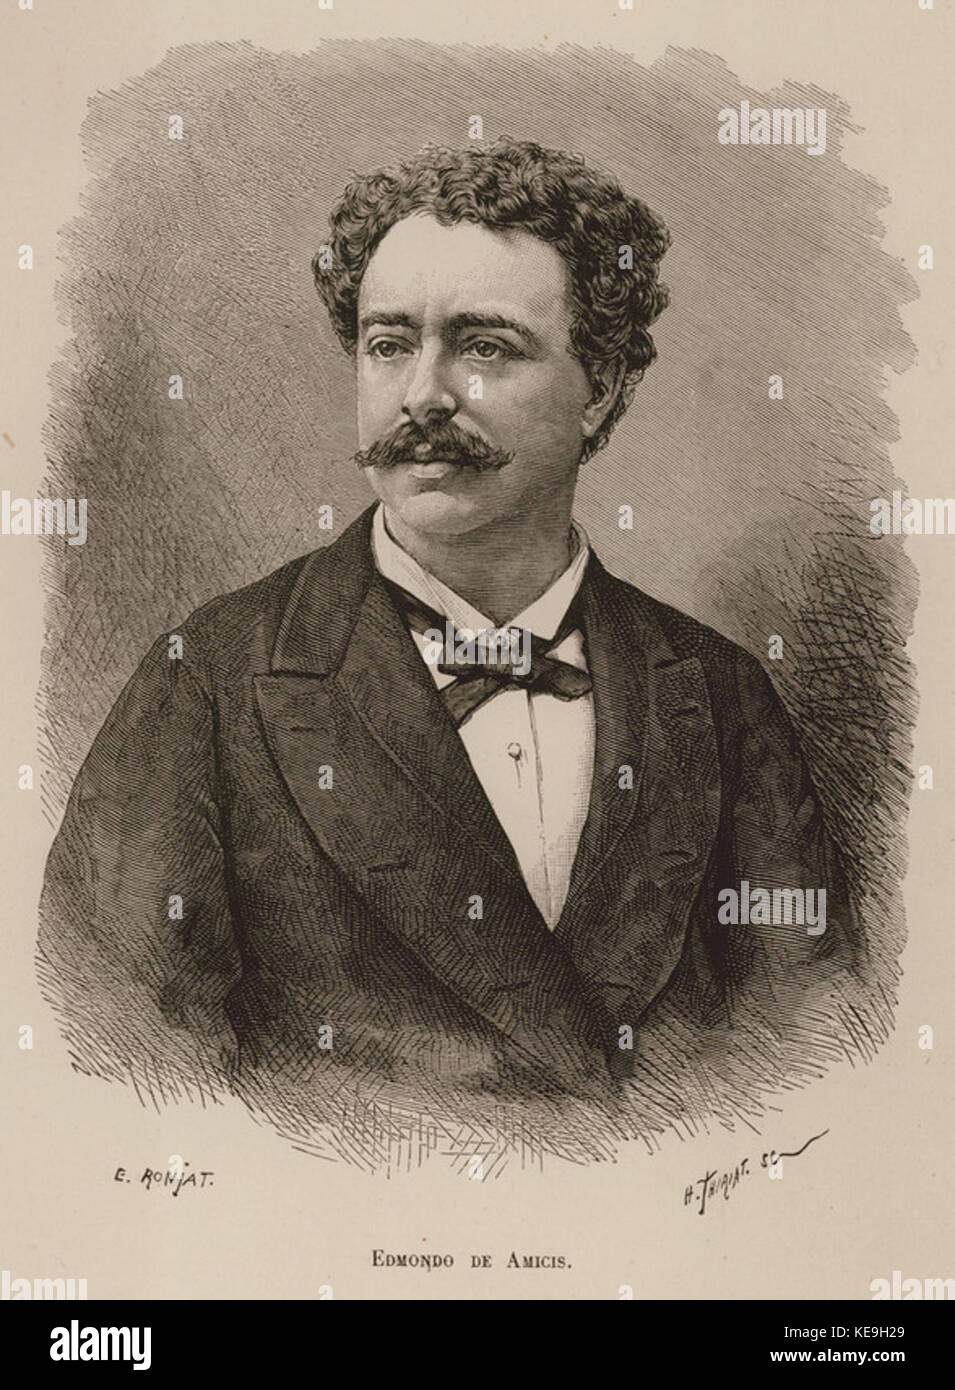 Edmondo de Amicis   De Amicis Edmondo   1883 Stock Photo